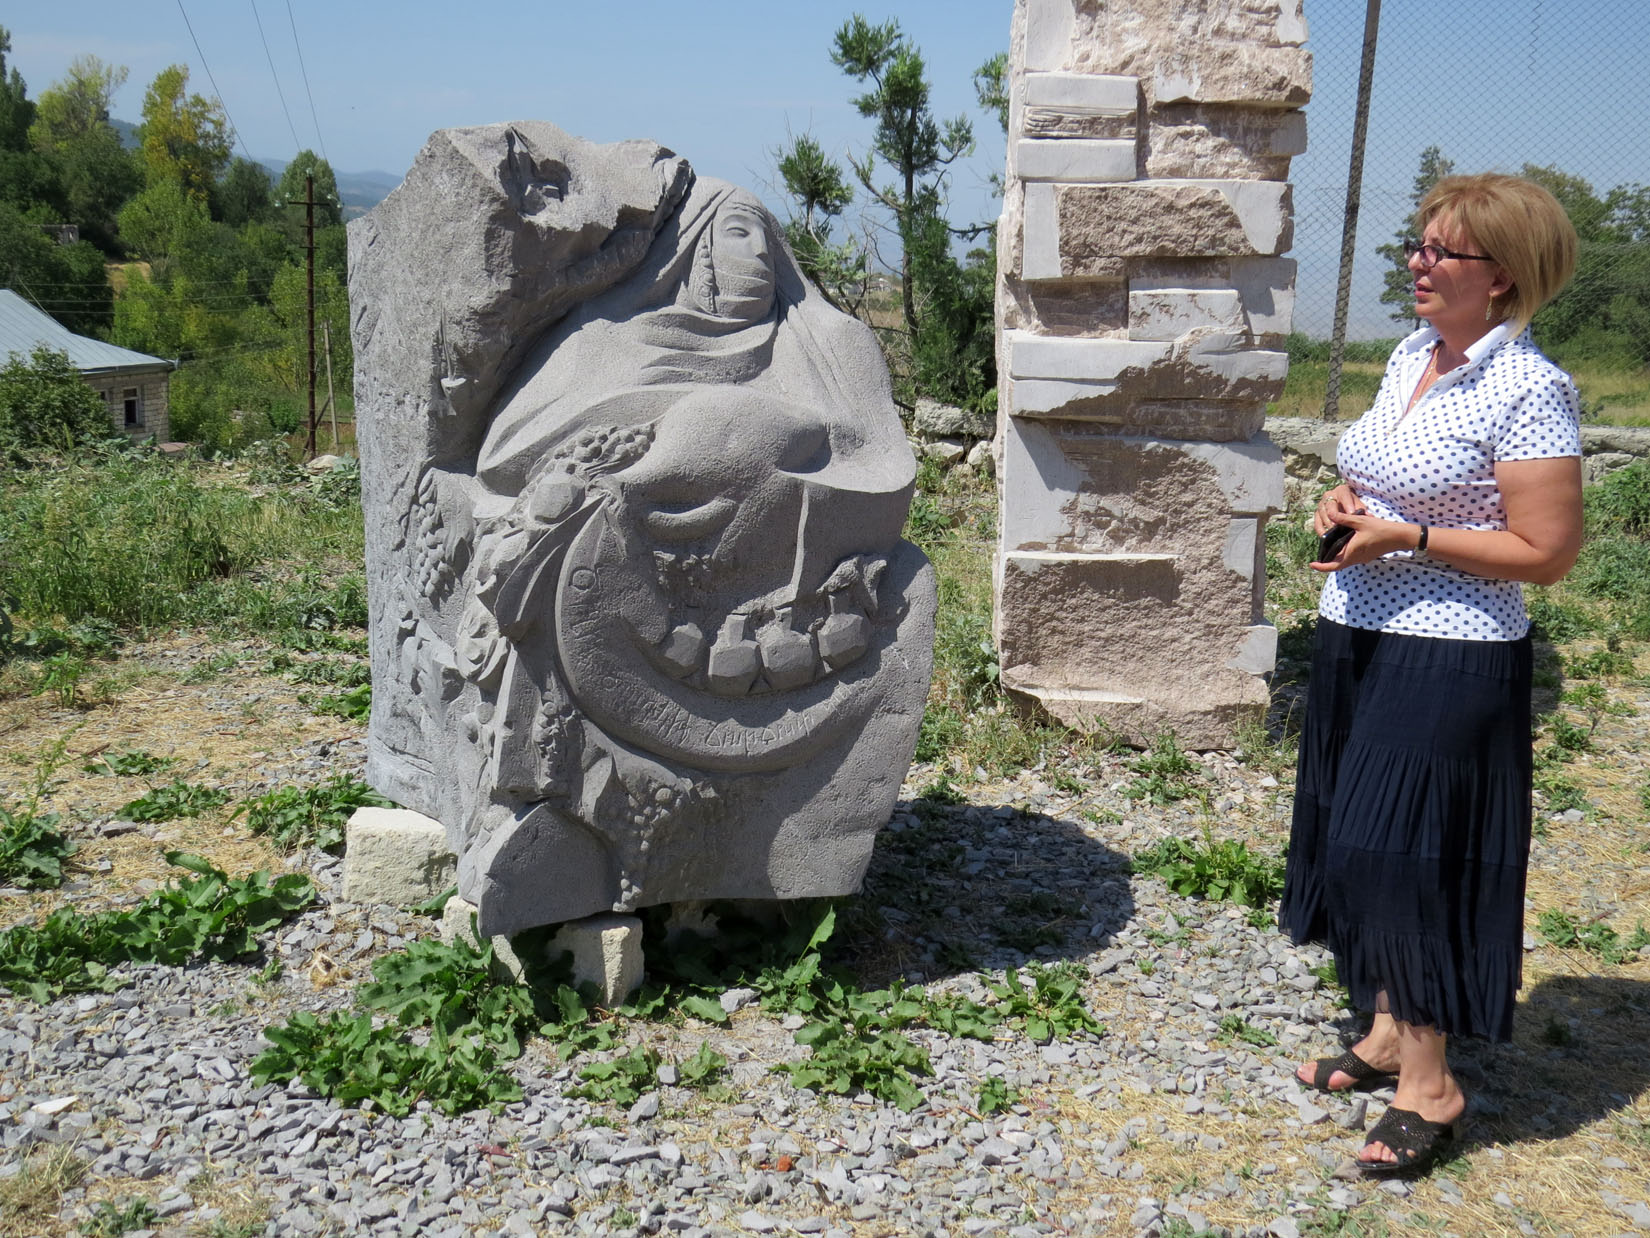 Элеонора рассматривает скульптуру белорусского скульптора Спартака Арутюняна 